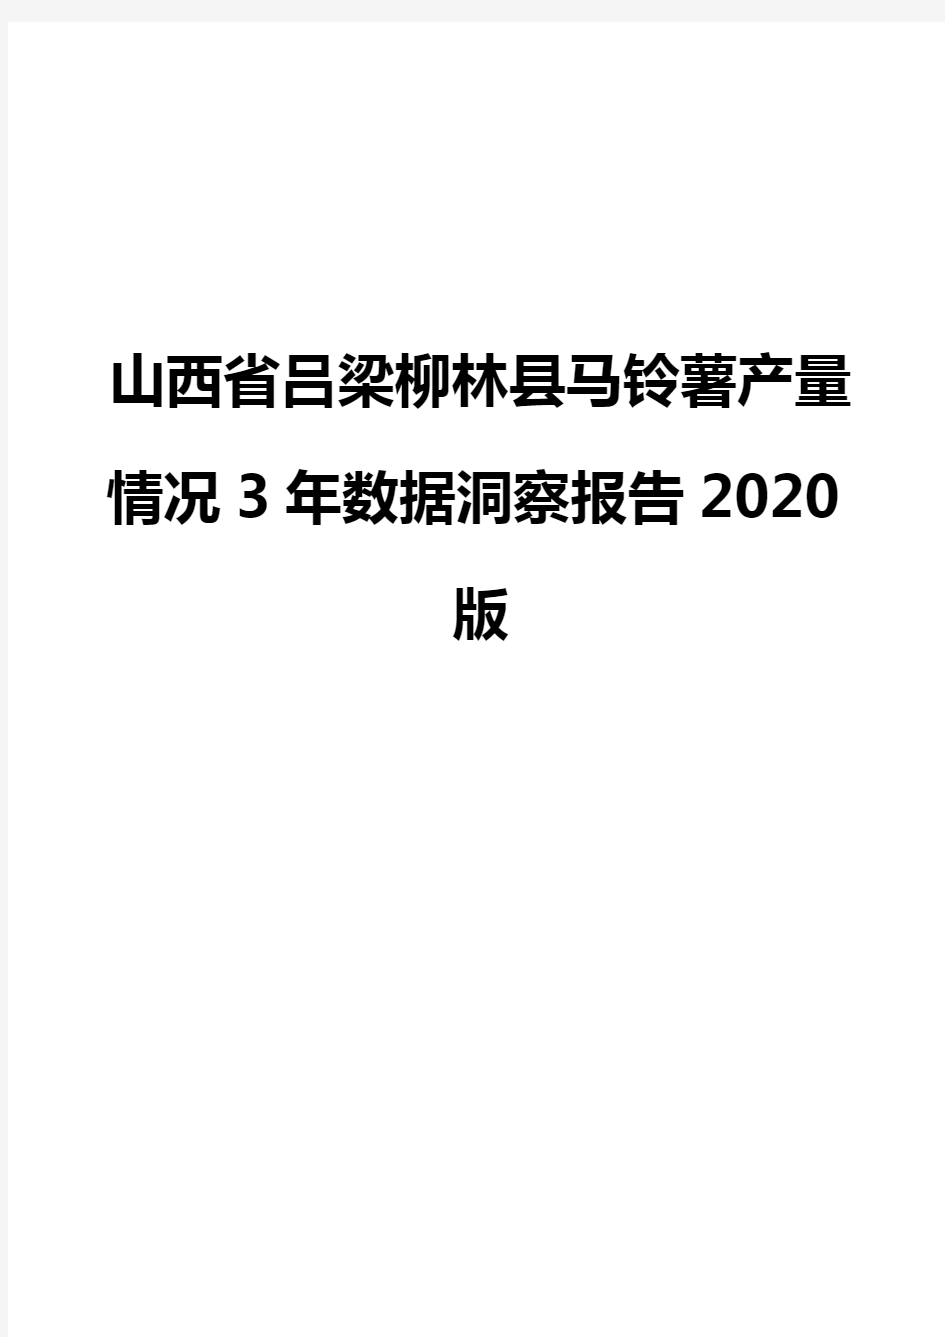 山西省吕梁柳林县马铃薯产量情况3年数据洞察报告2020版